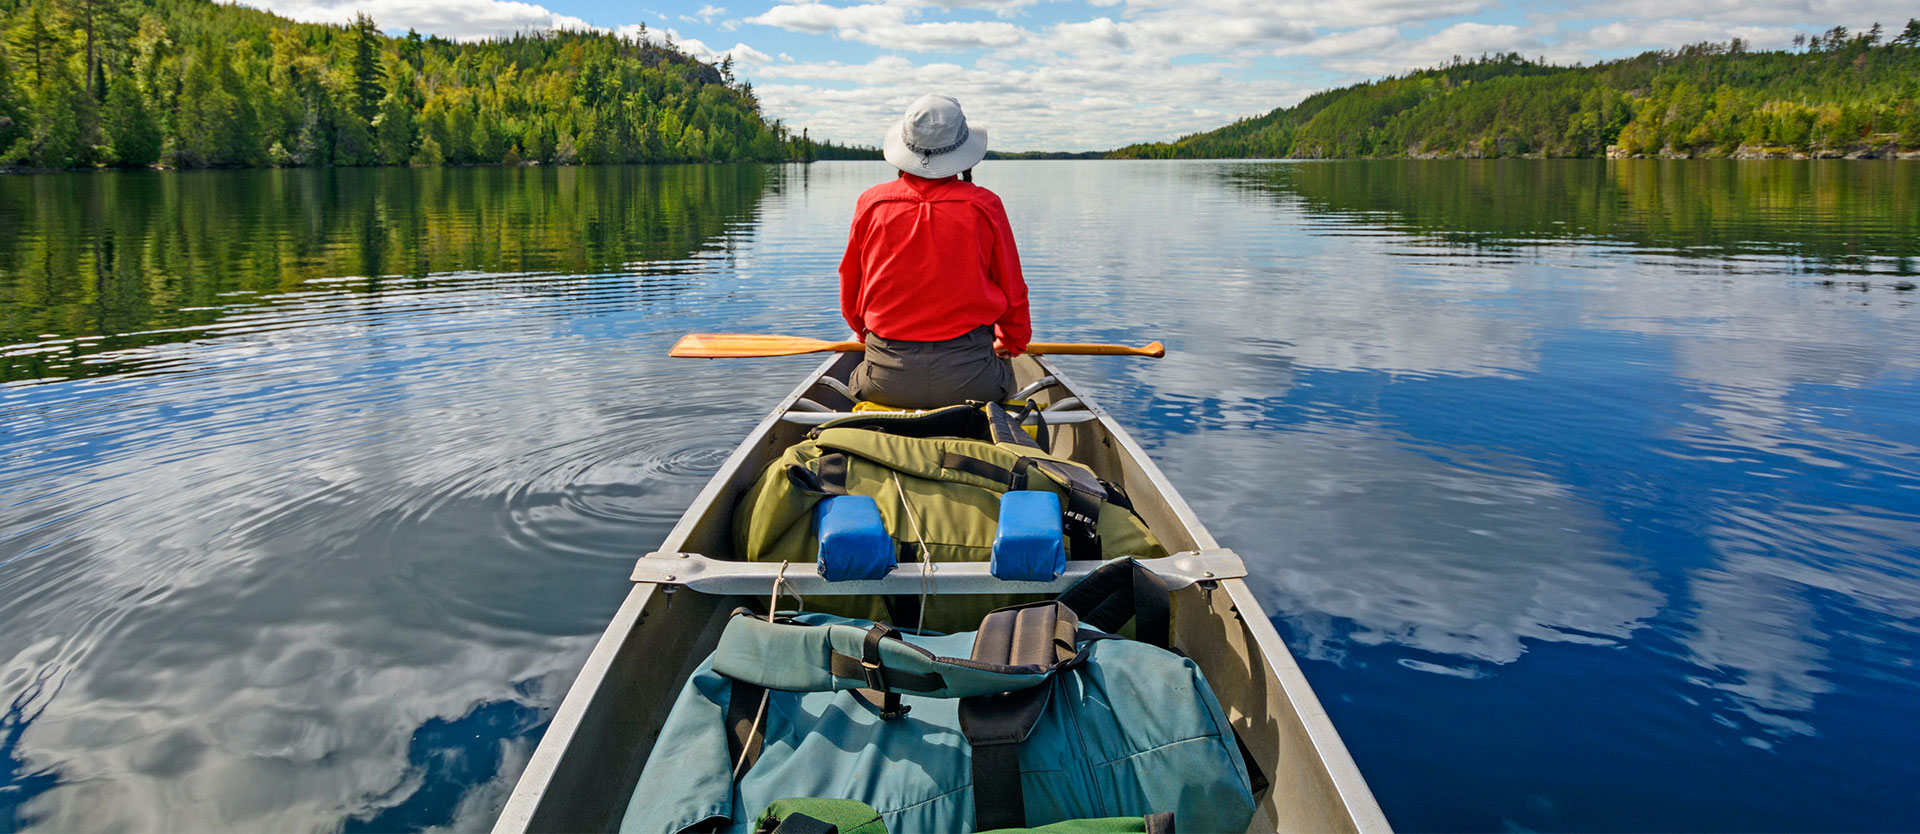 Canoe Experience Sweden - slider image